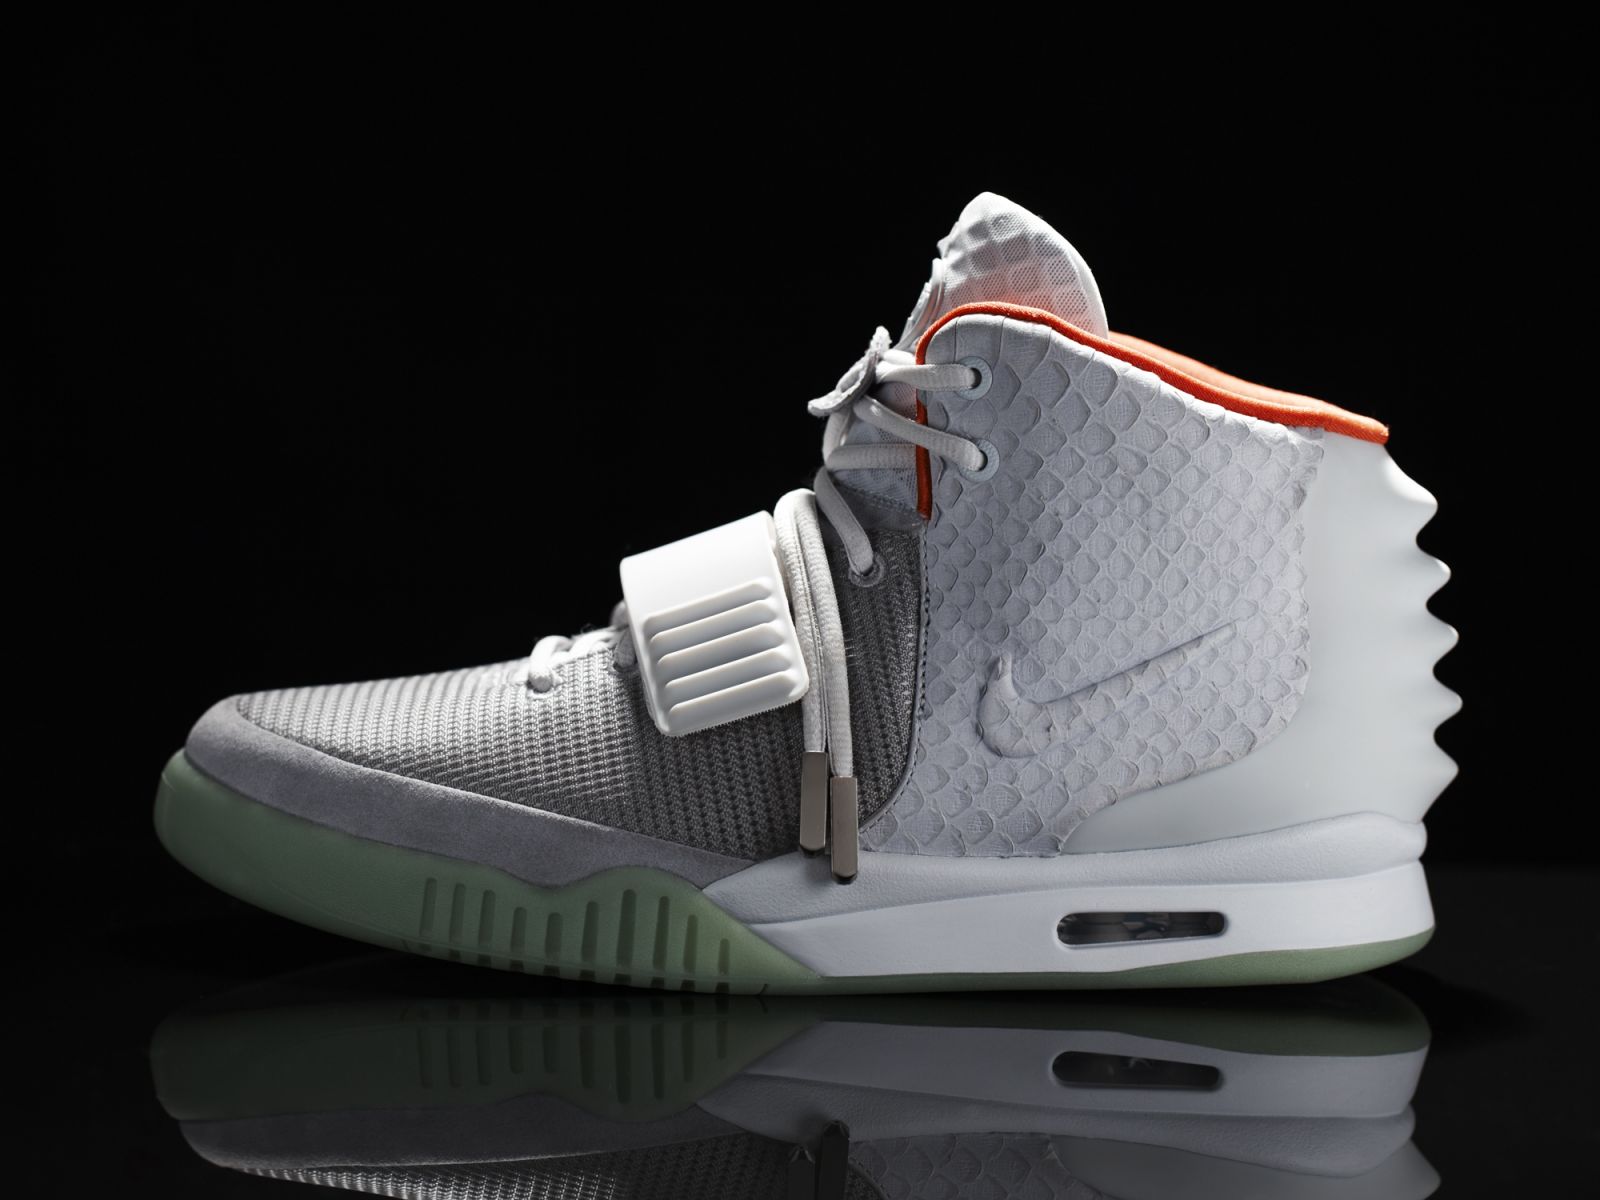 2012 sneaker releases